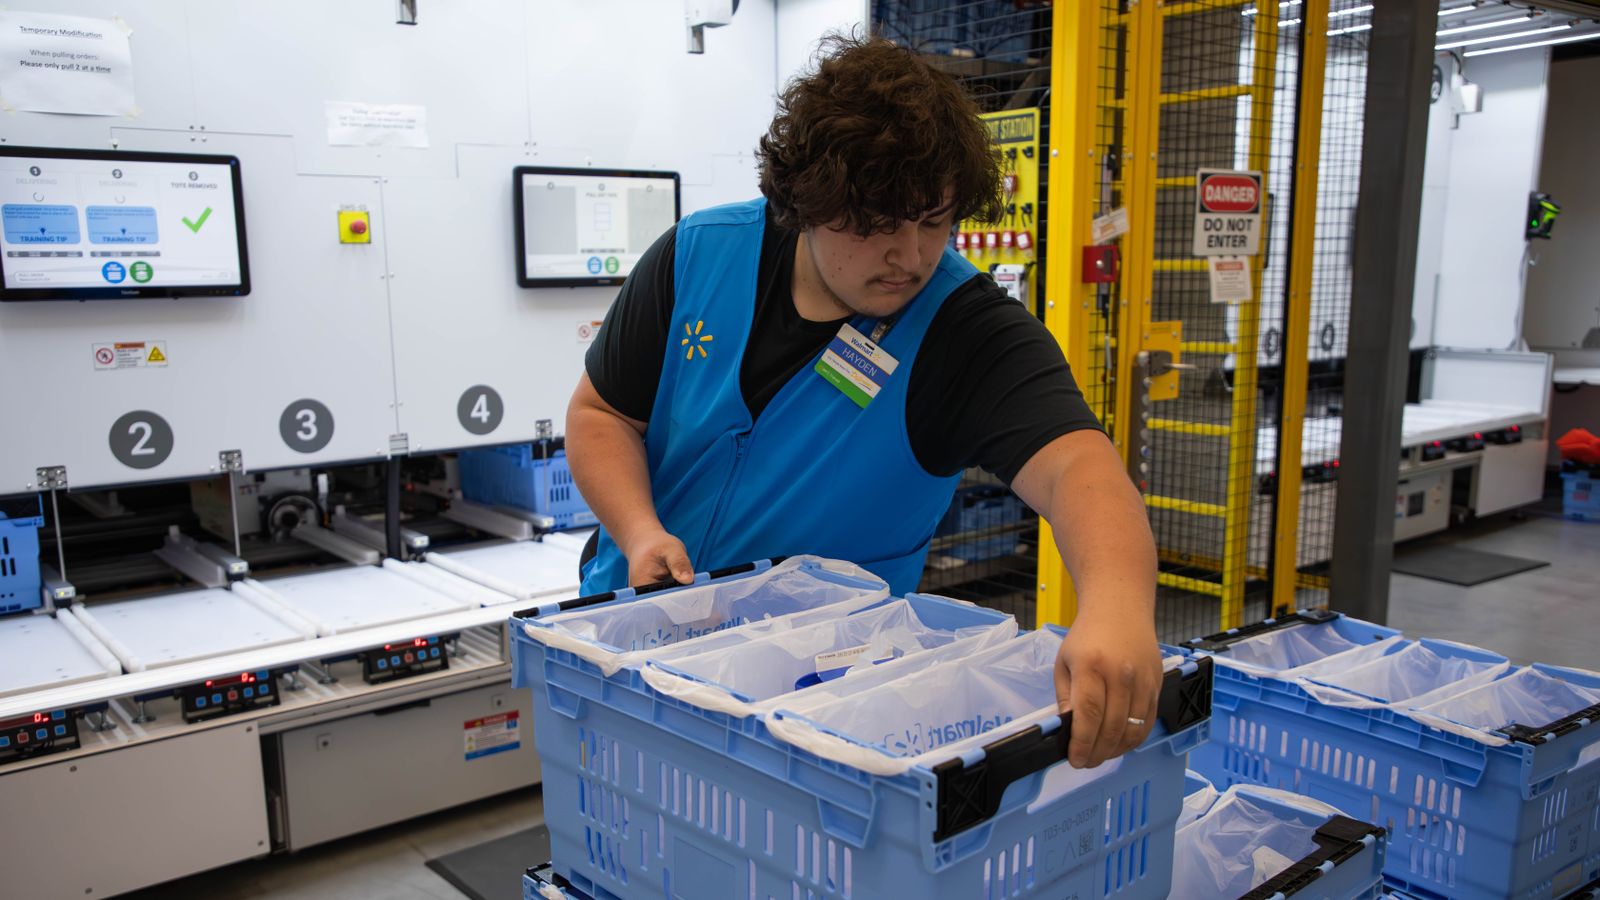 A Walmart employee handles a crate in a market fulfillment center.